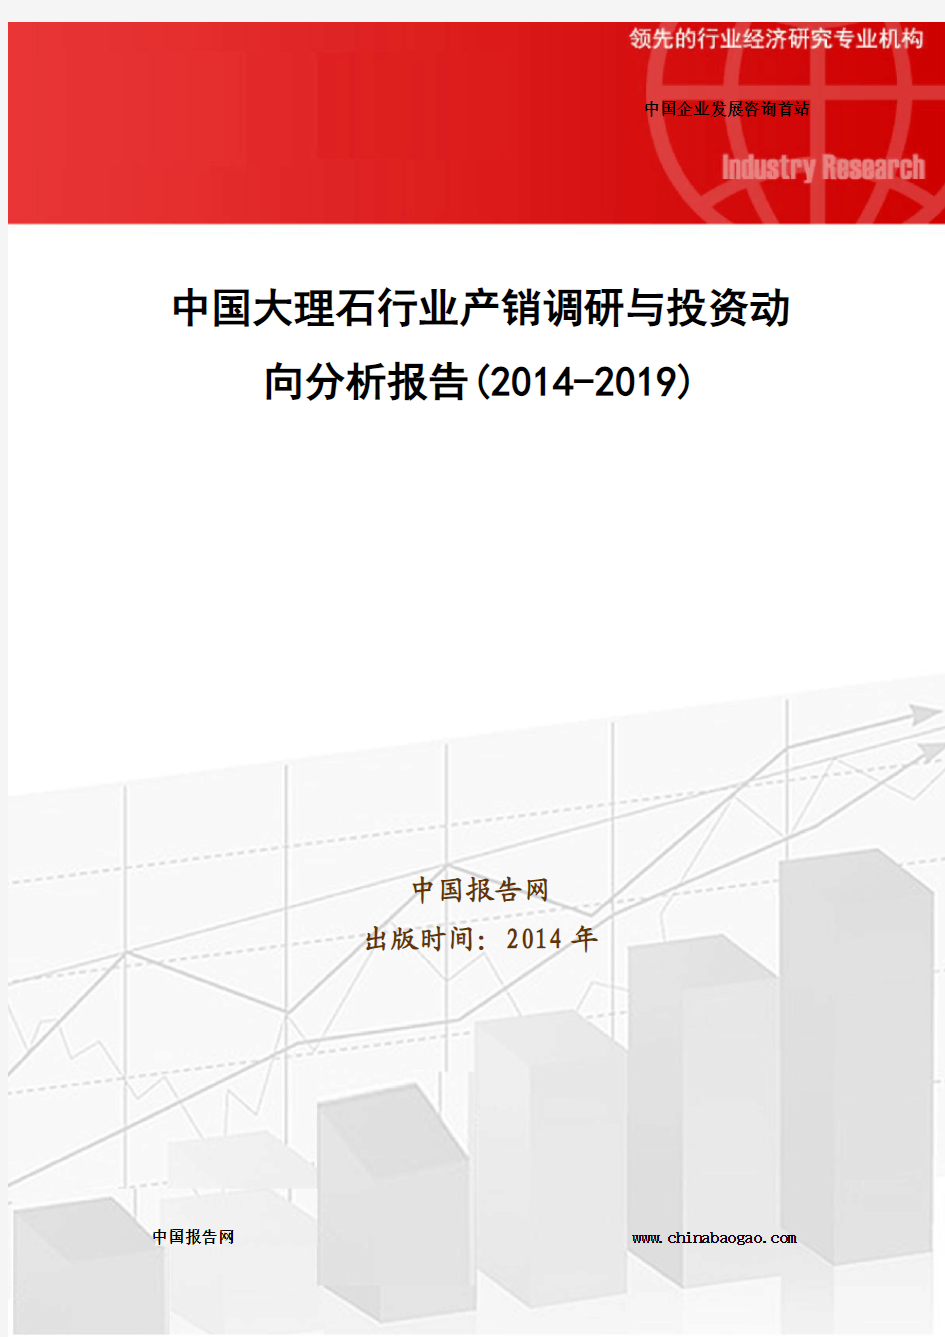 中国大理石行业产销调研与投资动向分析报告(2014-2019)